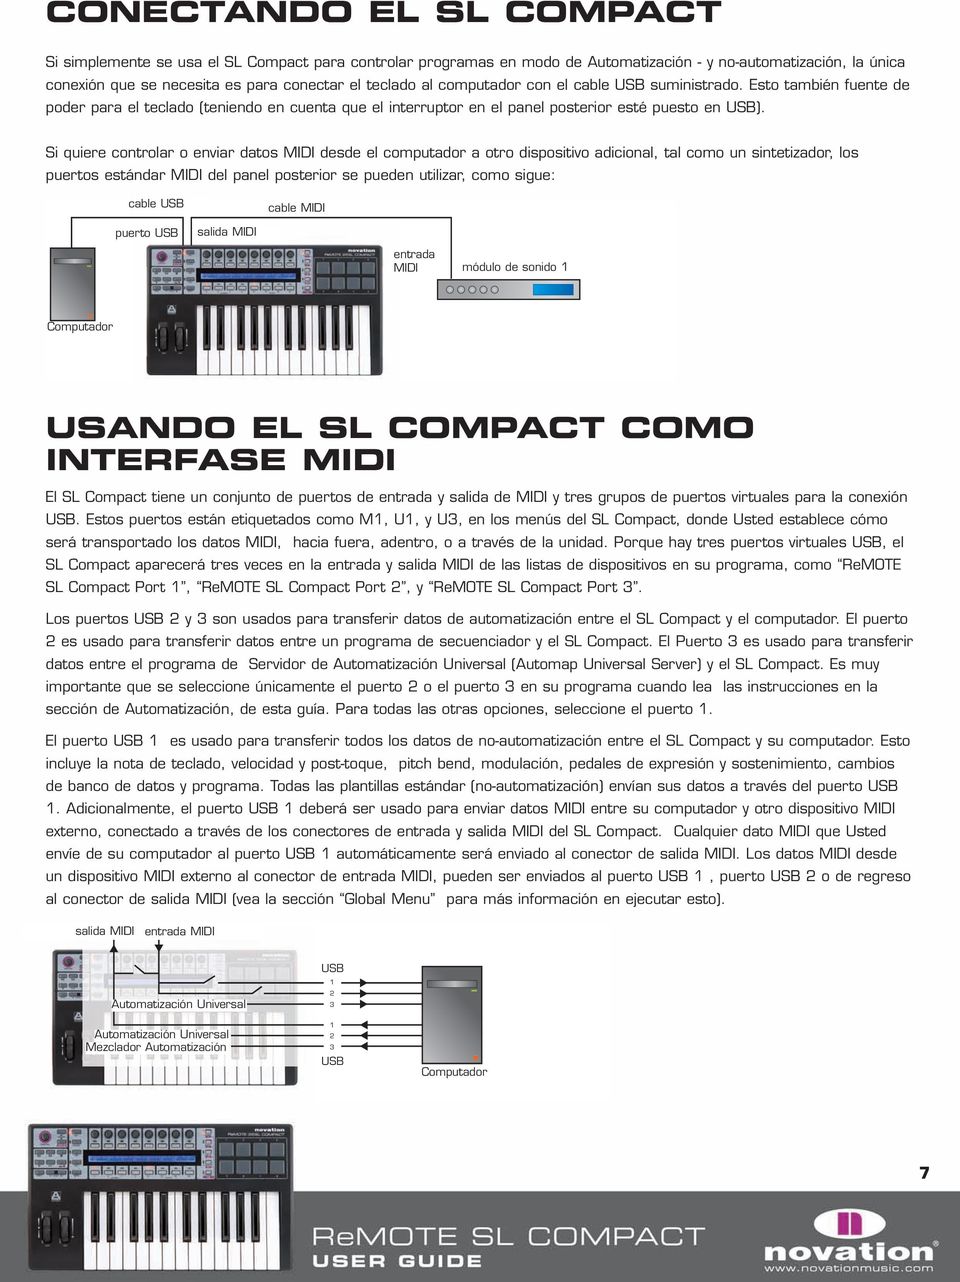 Si quiere controlar o enviar datos MIDI desde el computador a otro dispositivo adicional, tal como un sintetizador, los puertos estándar MIDI del panel posterior se pueden utilizar, como sigue: cable